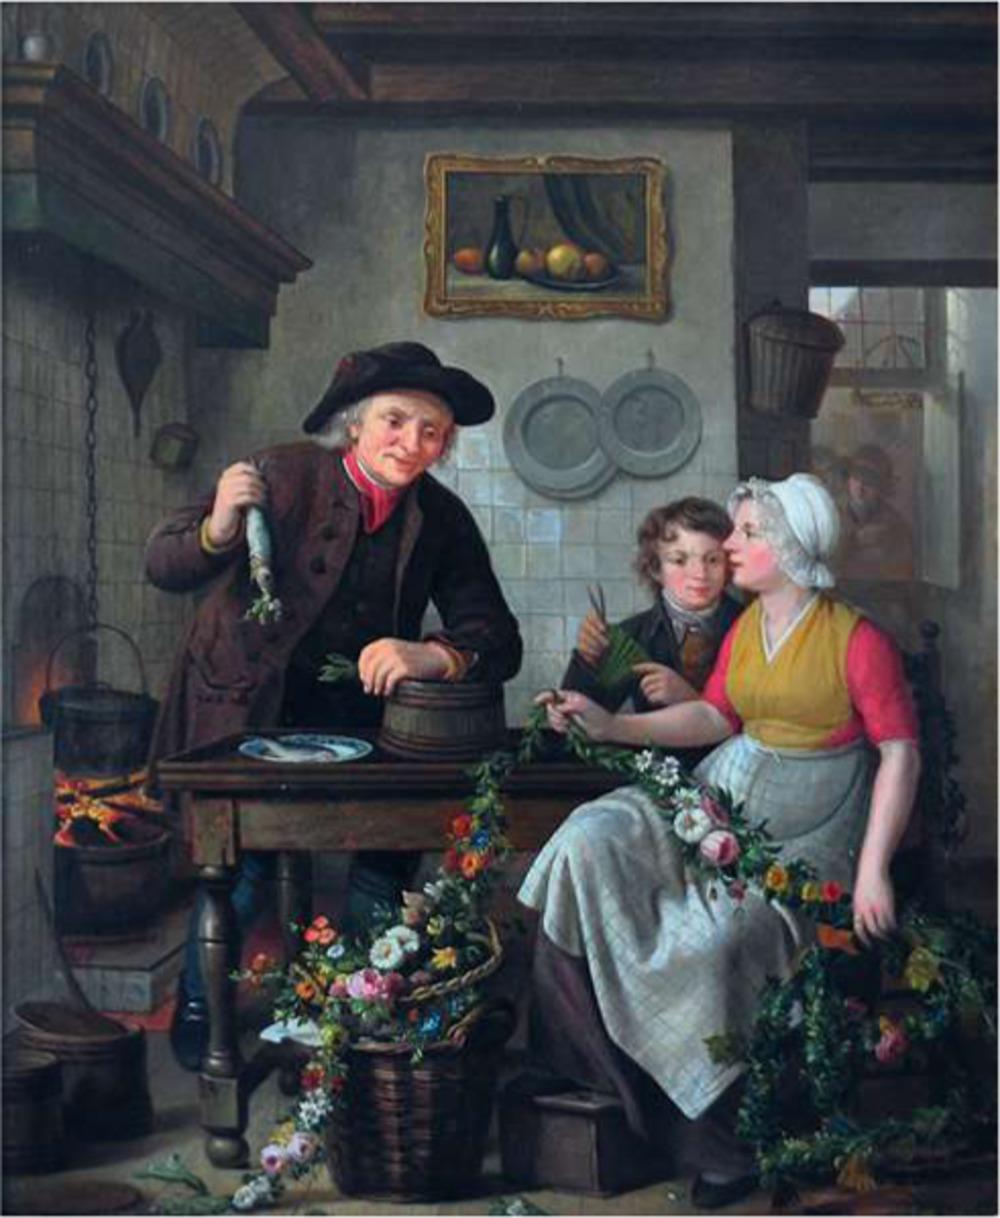 Voorbereidingen voor de verkoop van nieuwe haring. De haringhandelaar bevestigt een haring aan een bloemenkroon. Op de achtergrond buiten hangt al zo'n kroon die aankondigt dat er nieuwe haring te koop is. Olie op paneel door Adriaan de Lelie en Willem van Leen, 1815. (Museum Vlaardingen)